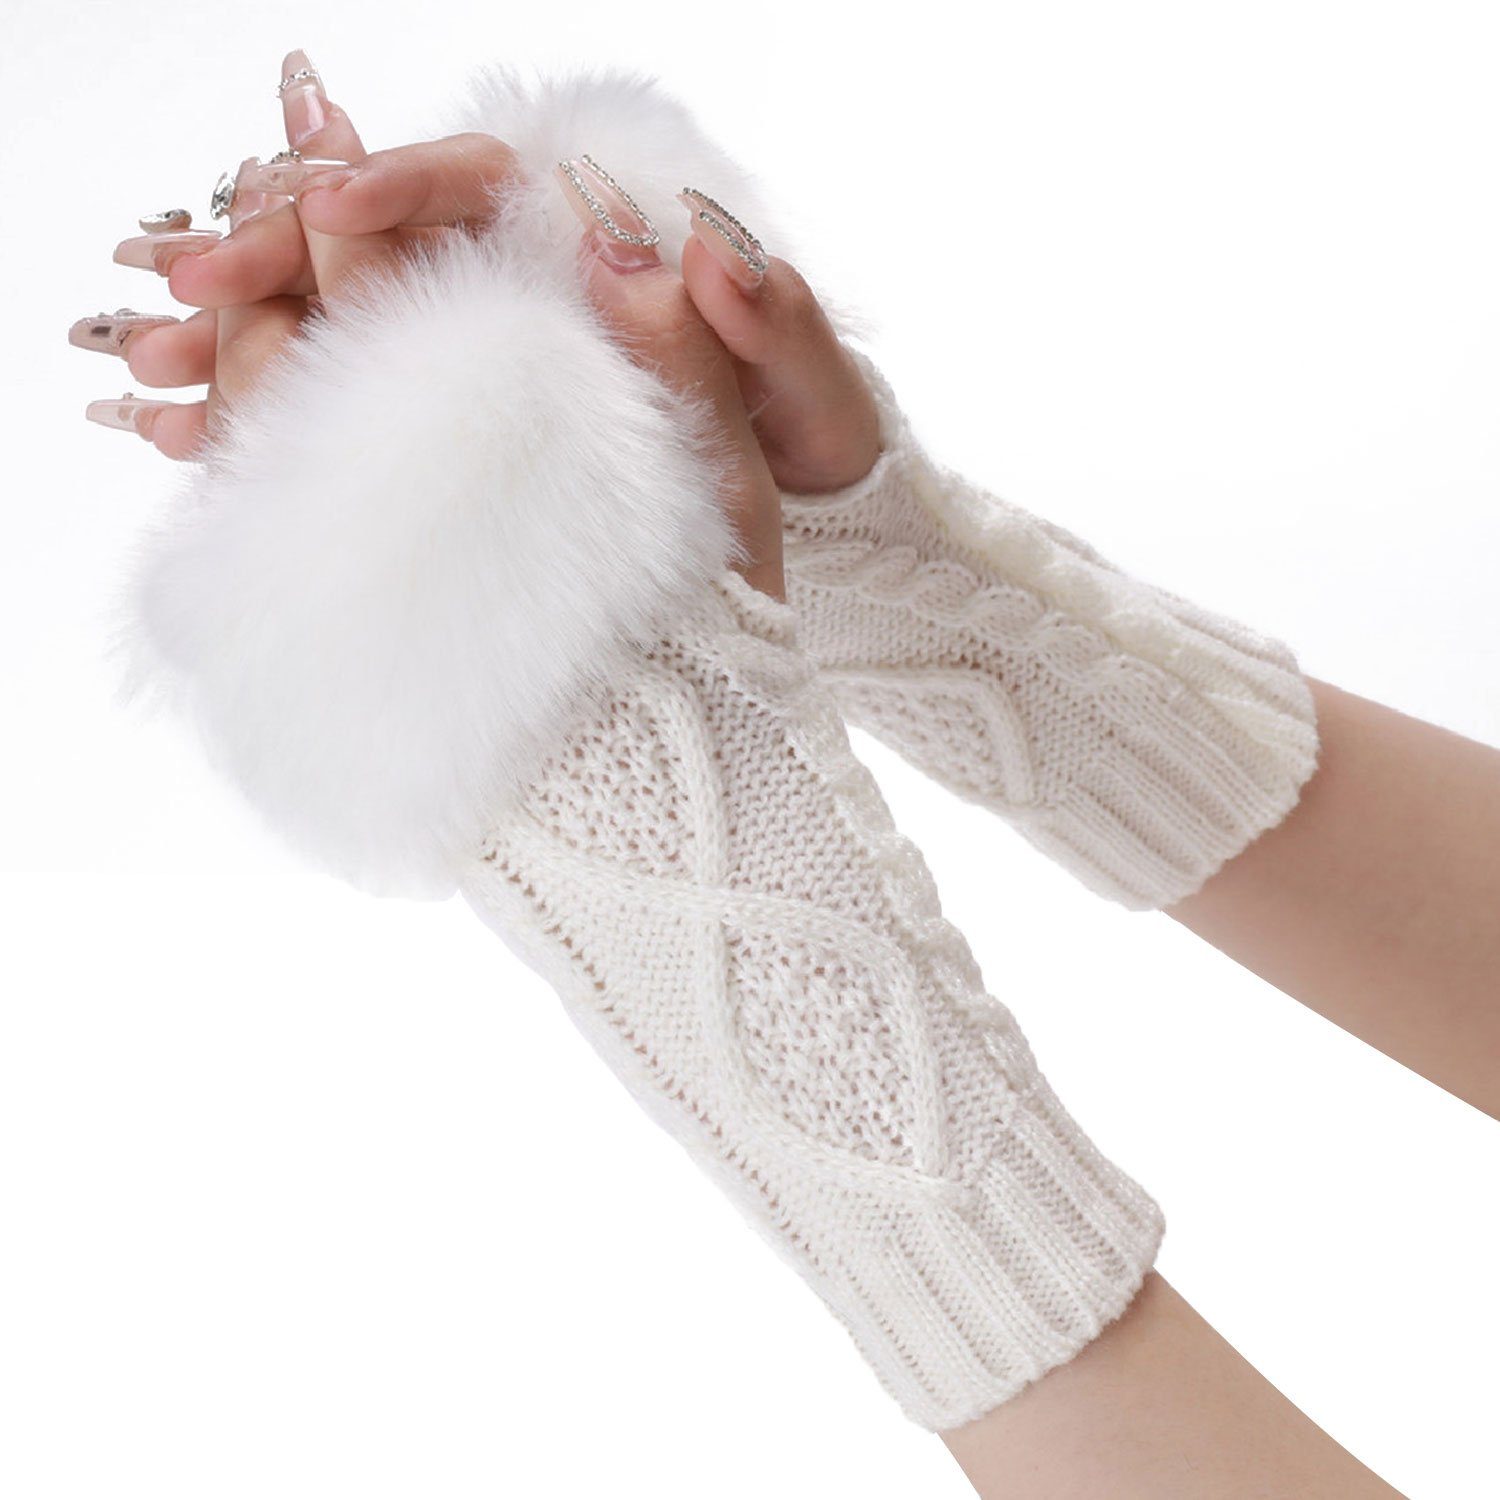 Billigwaren MAGICSHE Strickhandschuhe Fingerlose Handschuhe Damen Weiß Kunstpelz Gestrickte